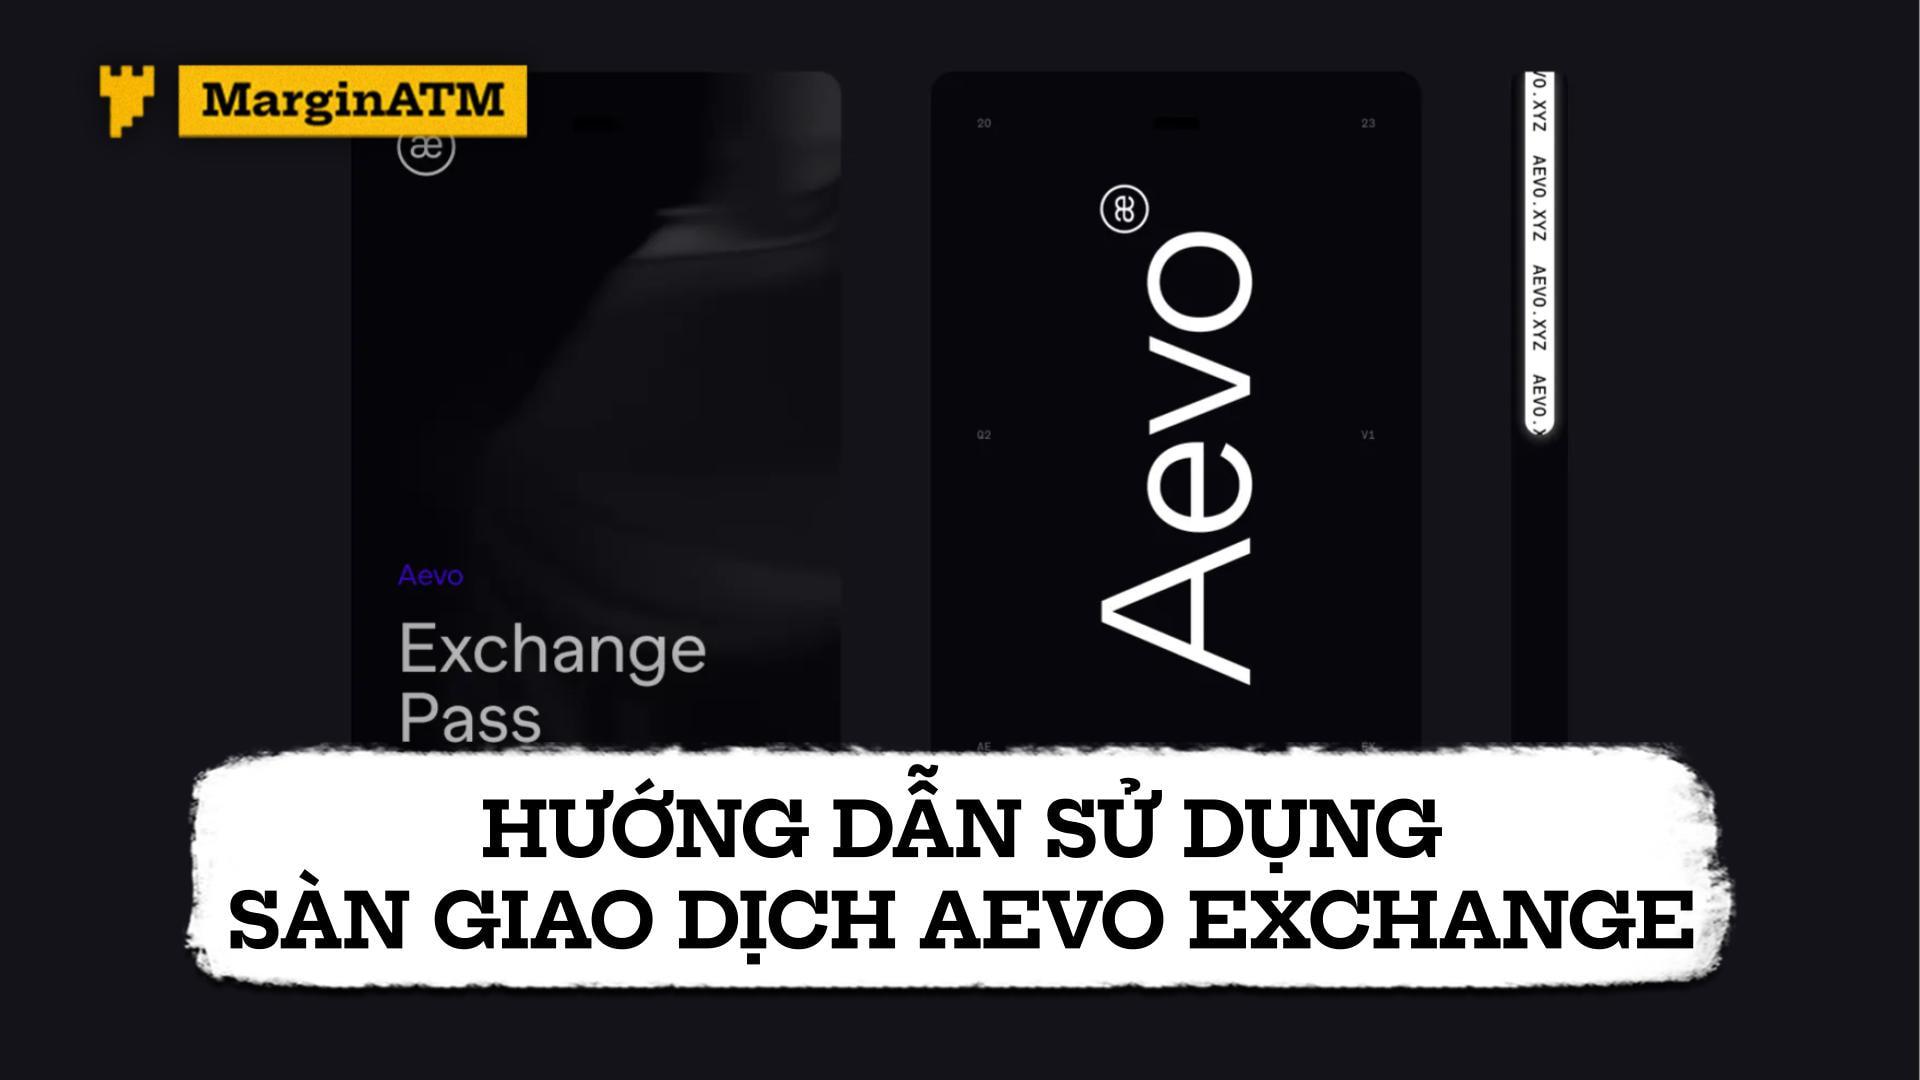 Hướng dẫn sử dụng sàn giao dịch Aevo Exchange